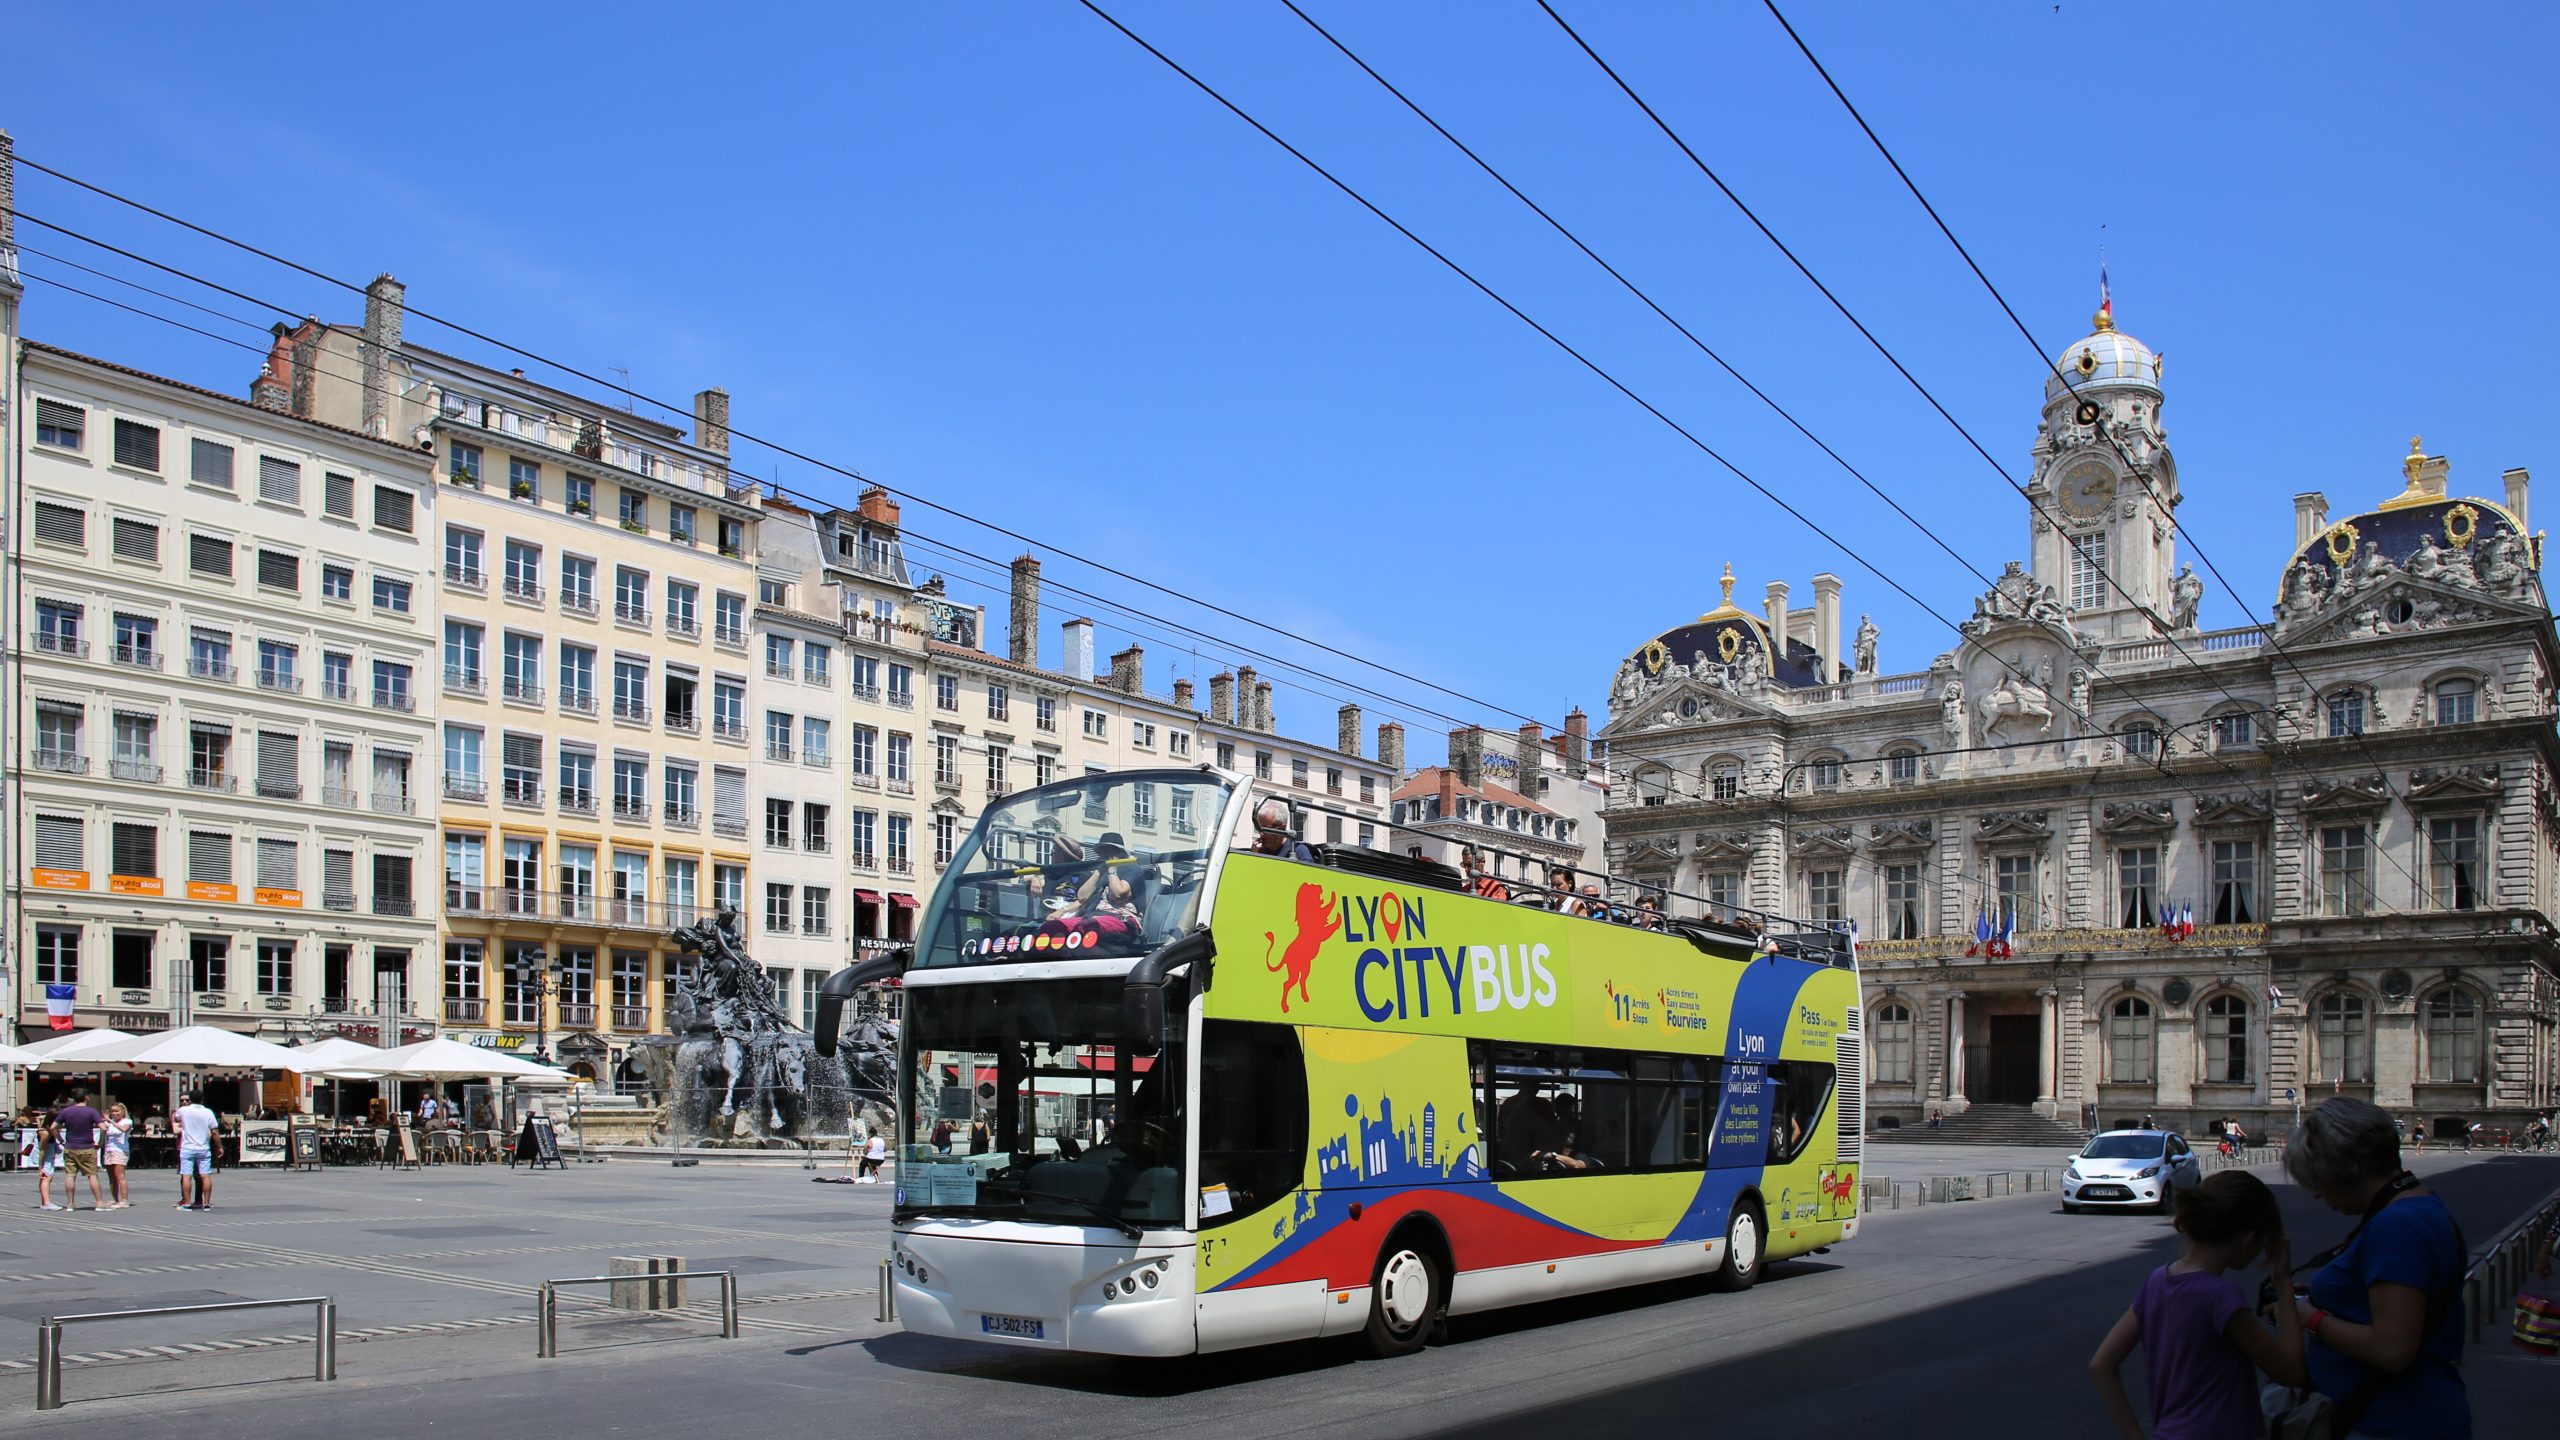 Lyon City Tour Bus